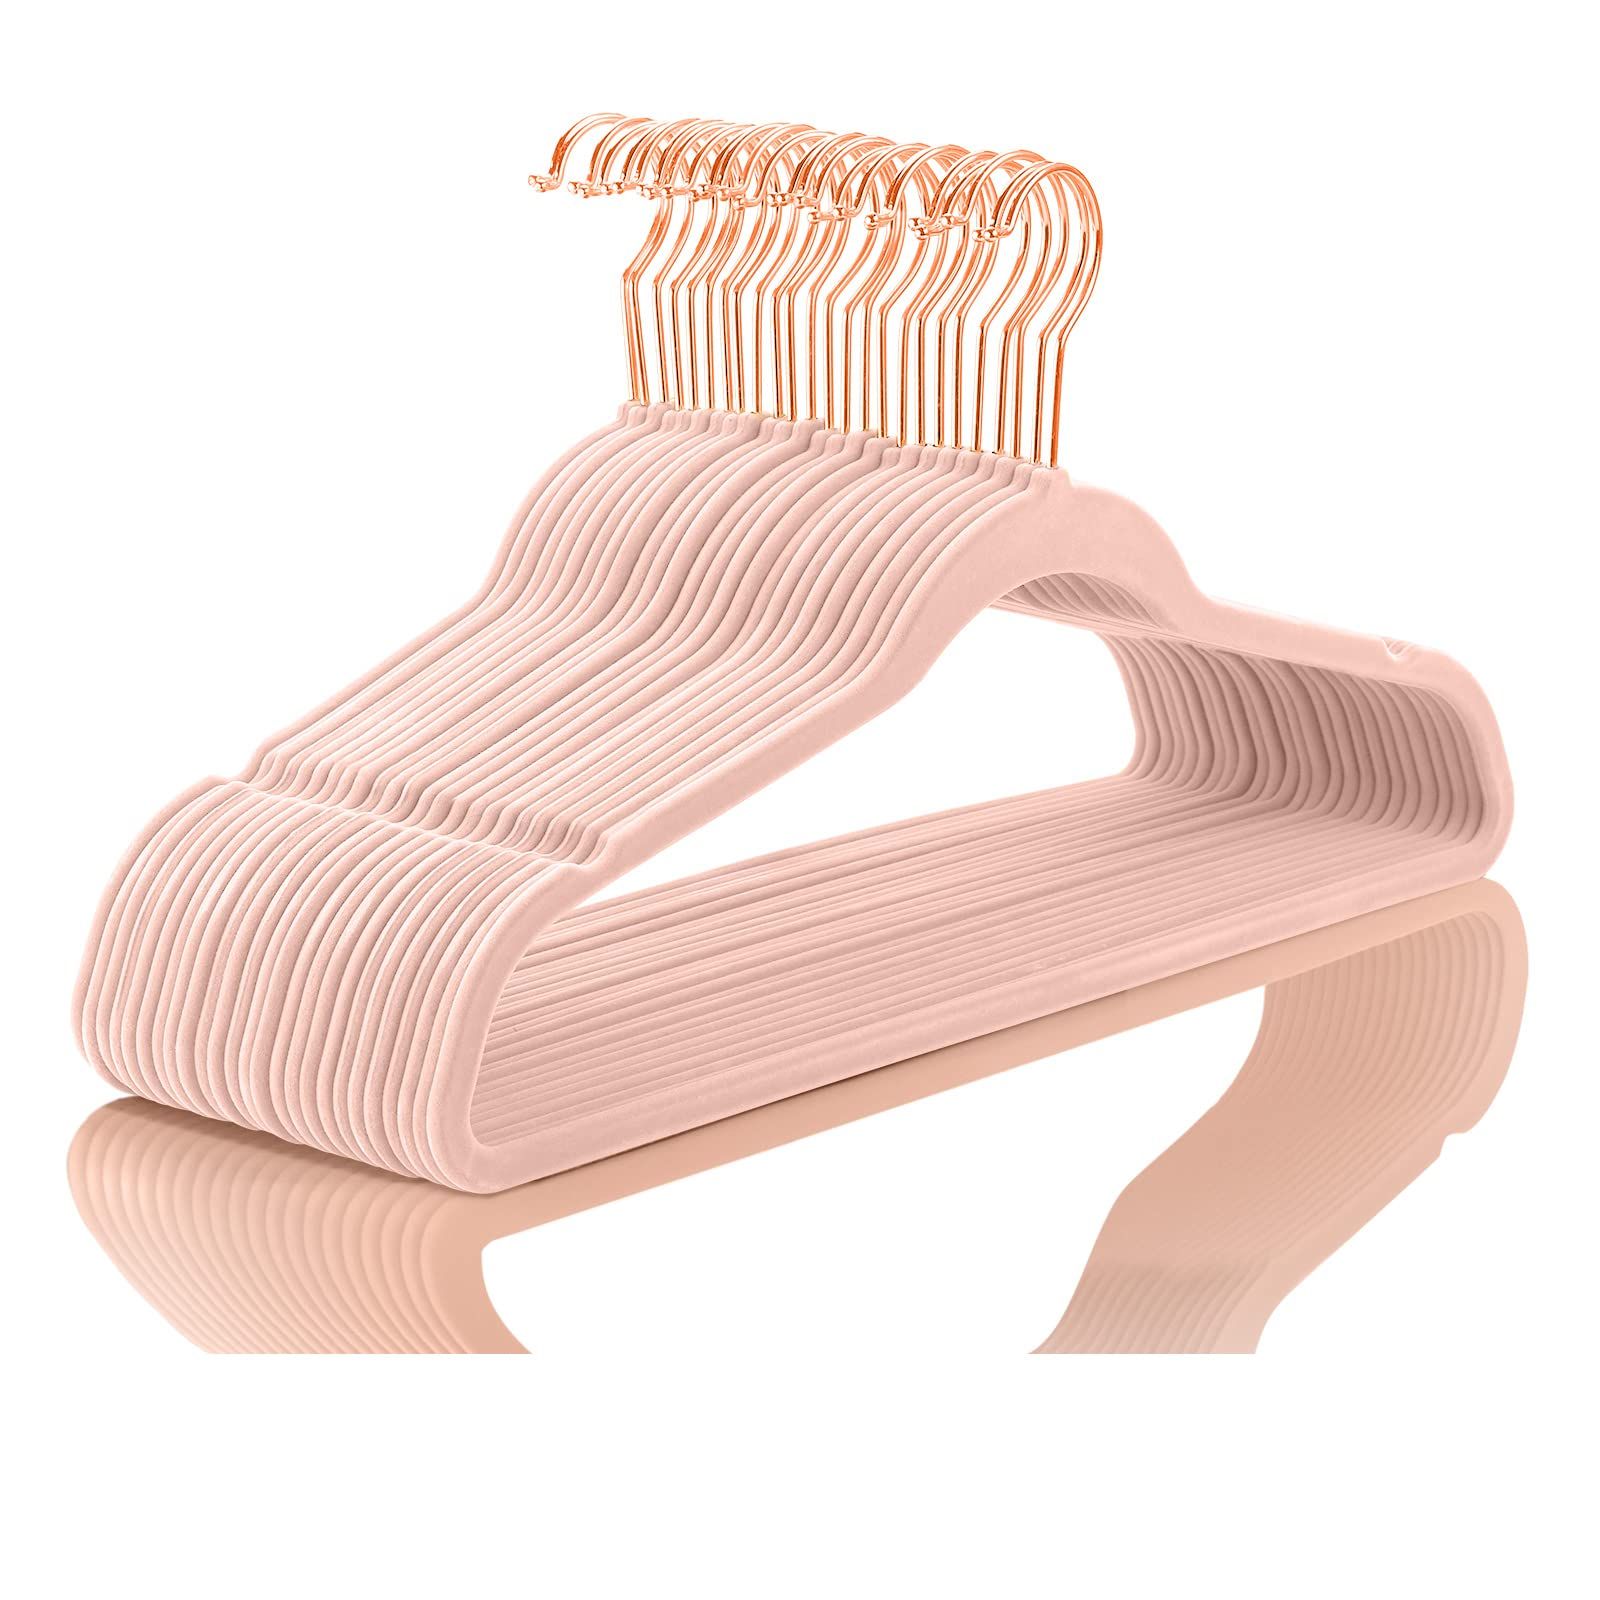 Premium Velvet Hangers (Pack of 50) Heavyduty - Non Slip - Velvet Suit Hangers Blush Pink - Coppe... | Amazon (US)